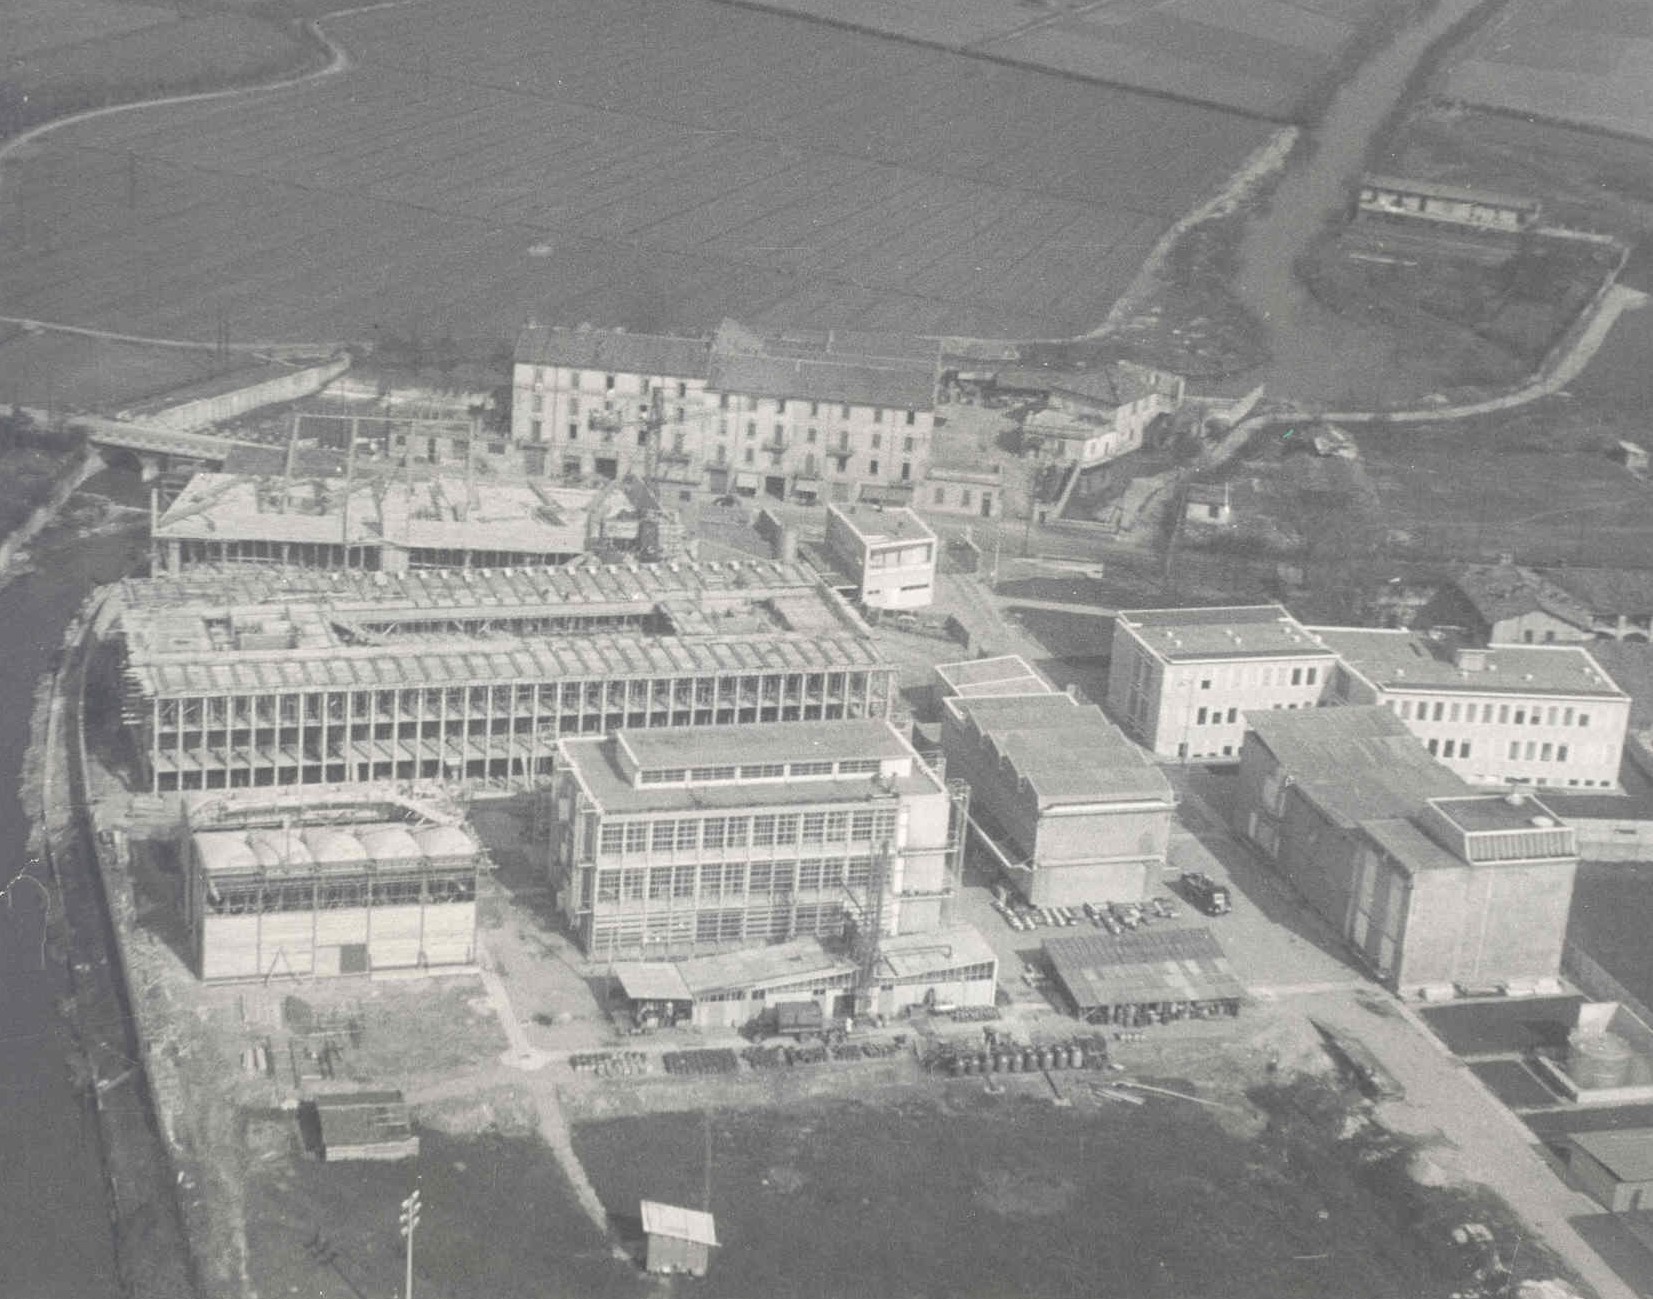 Sito produttivo Bracco, anni '50